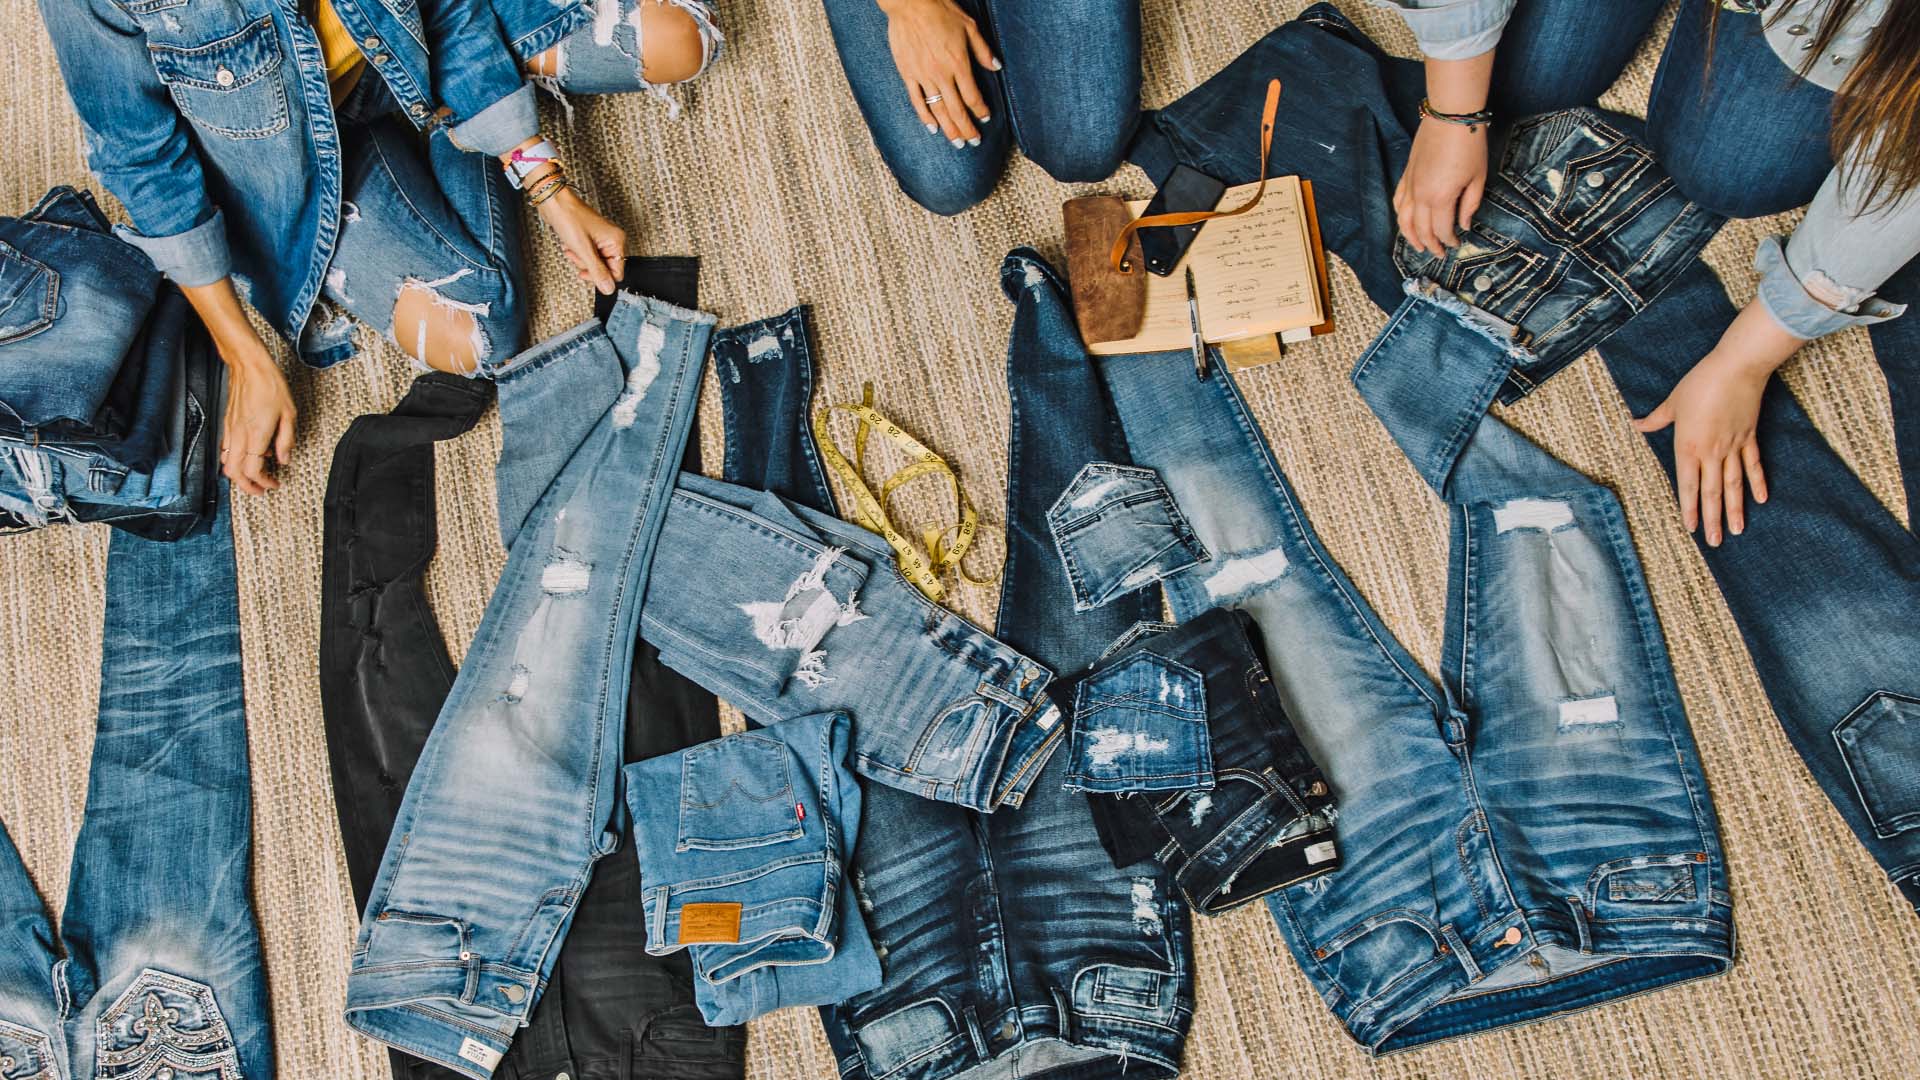 Come vendere jeans usati online?